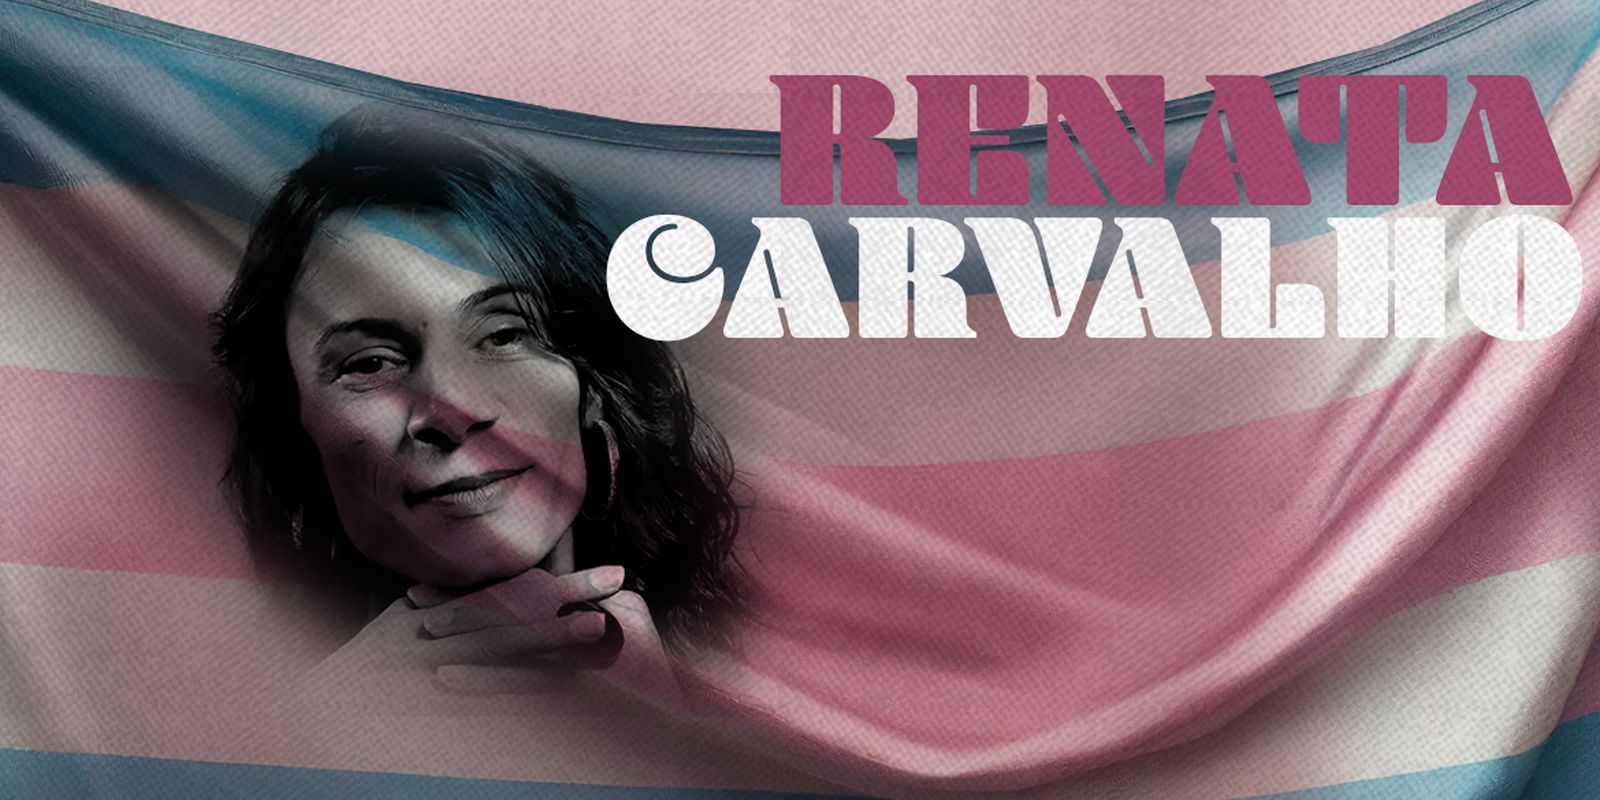 Atriz trans Renata Carvalho desbrava a arte e a luta por representação